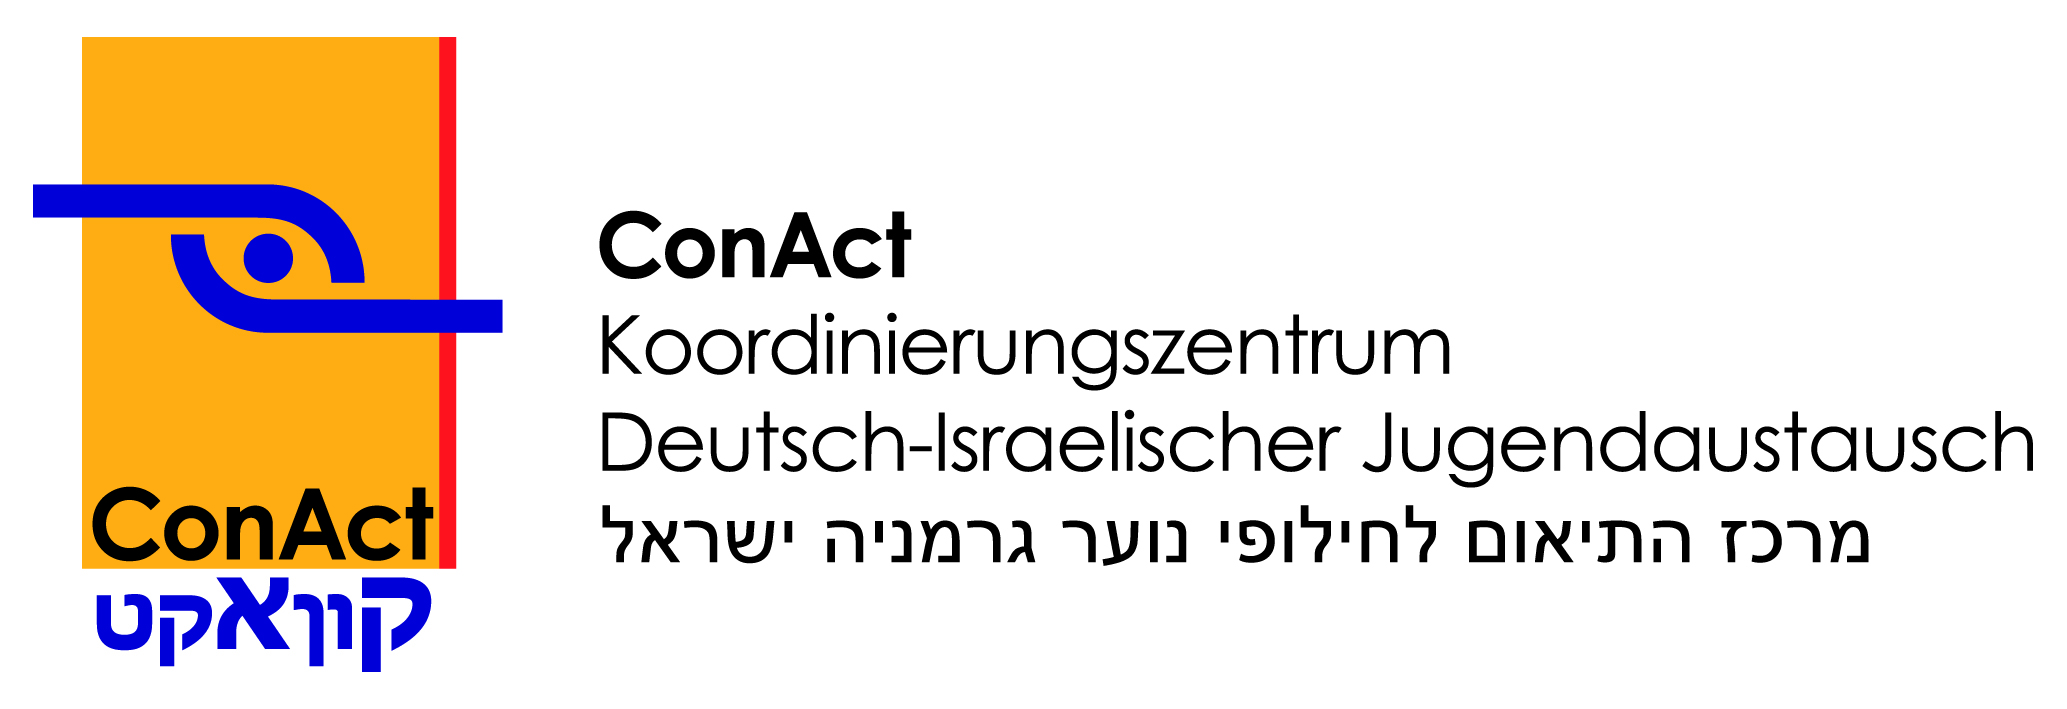 ConAct – Koordinierungszentrum Deutsch-Israelischer Jugendaustausch